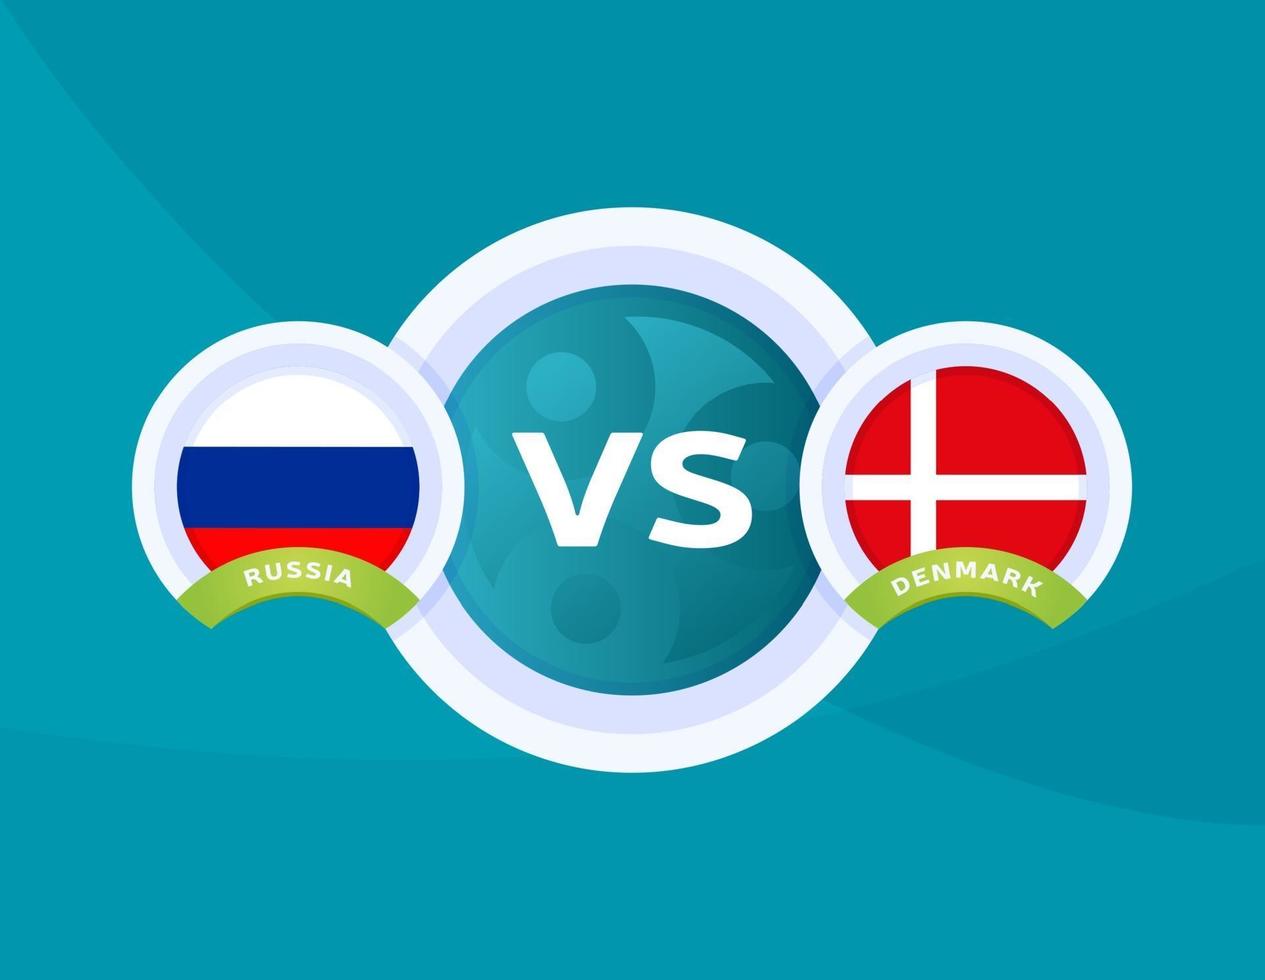 Denmark vs russia